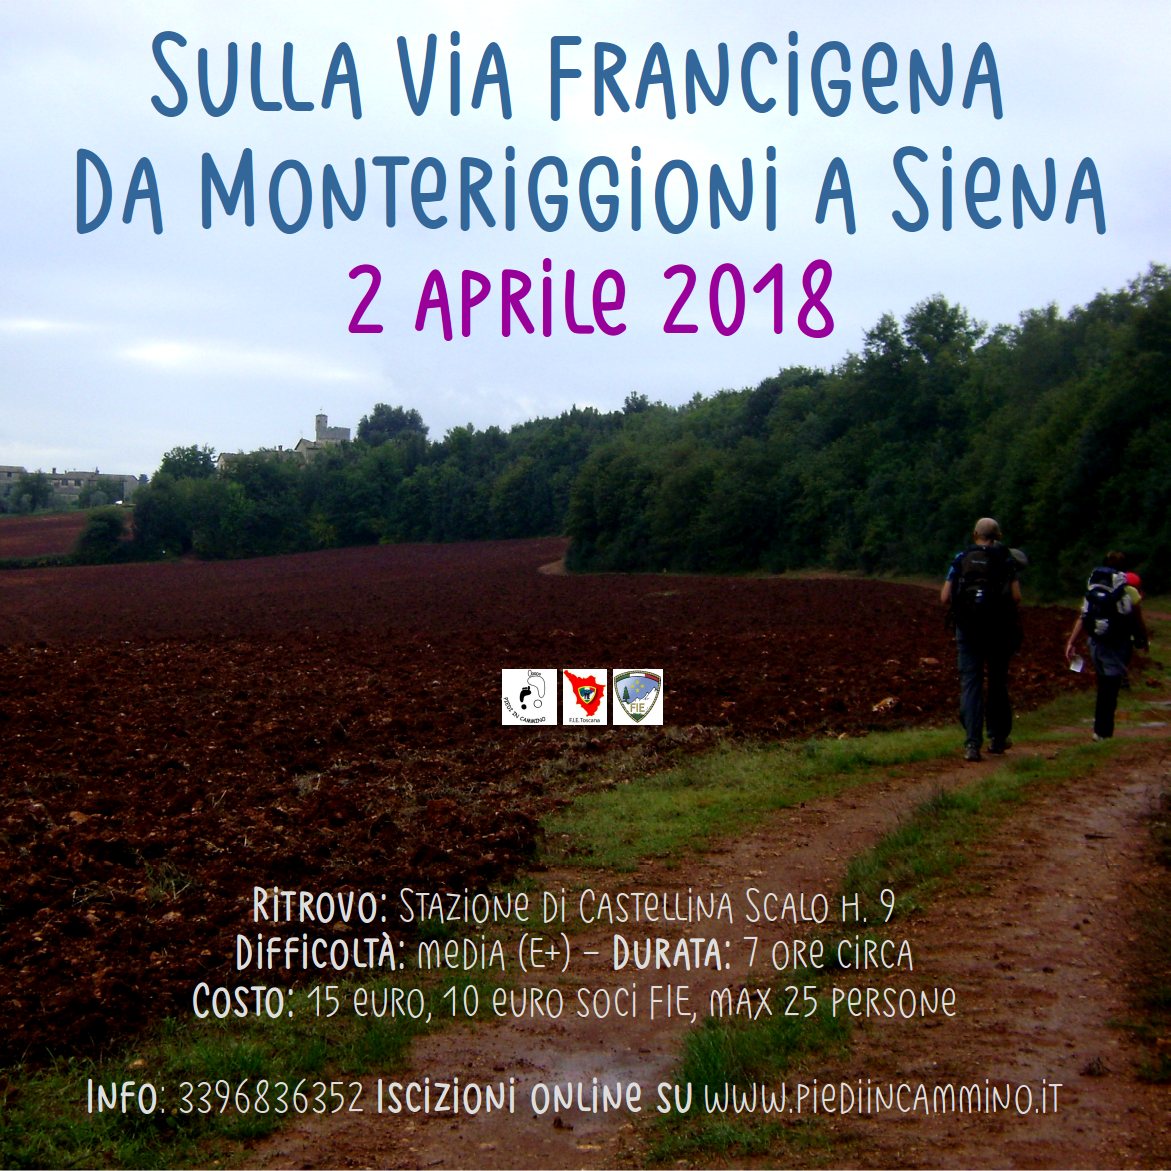 Sulla Via Francigena da Monteriggioni a Siena